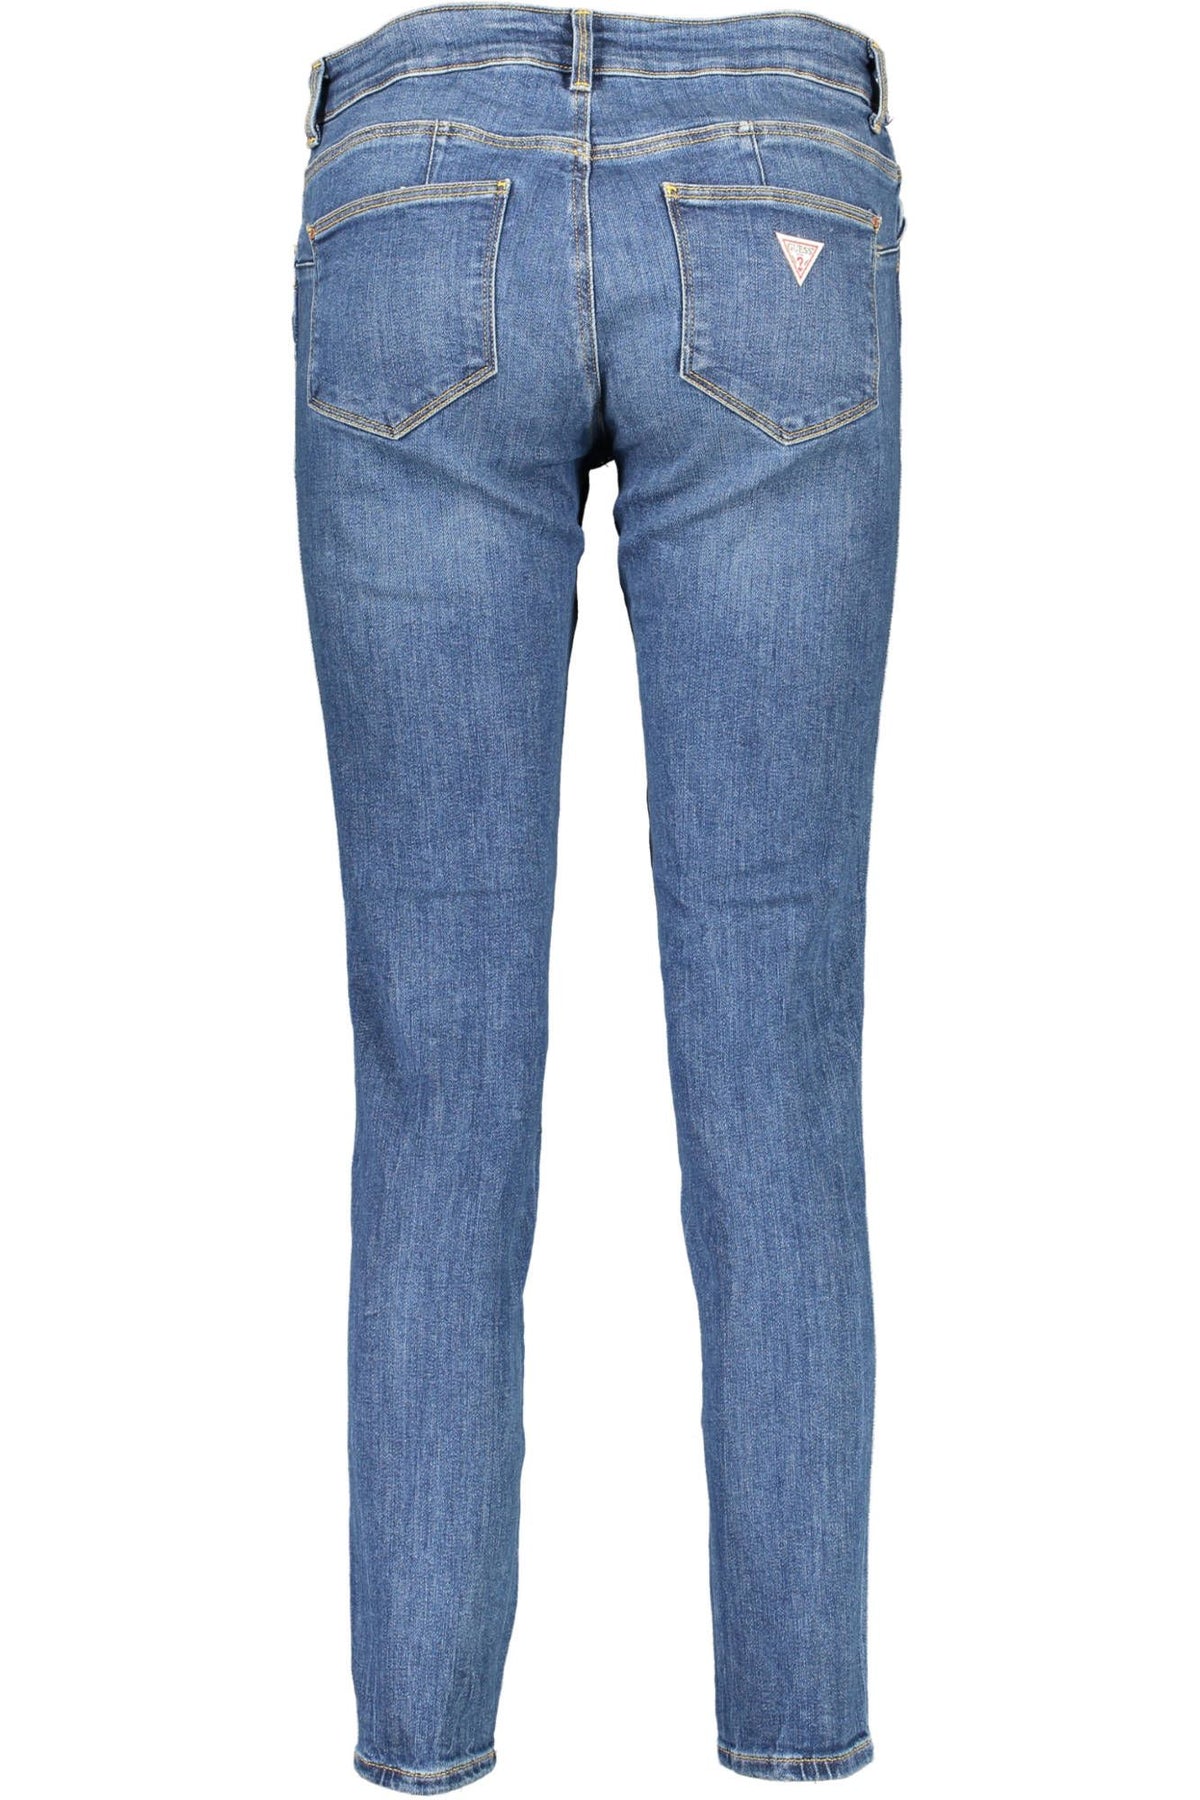 Guess Jeans – Schicke verwaschene Skinny-Jeans mit Logo-Detail